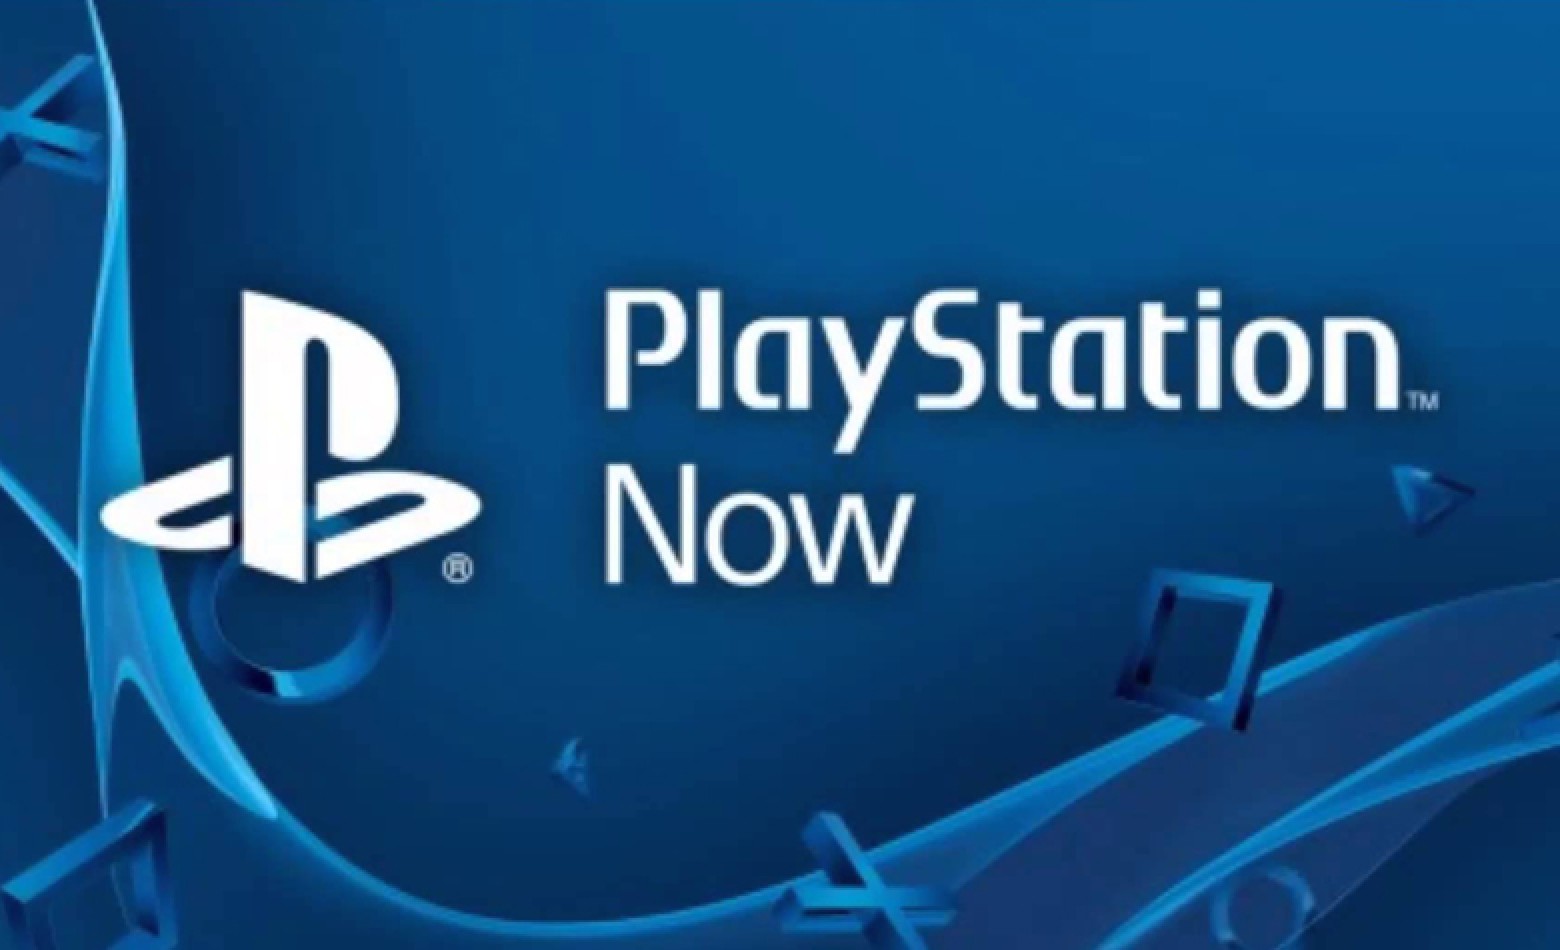 PlayStation Now contará com centenas de títulos no lançamento